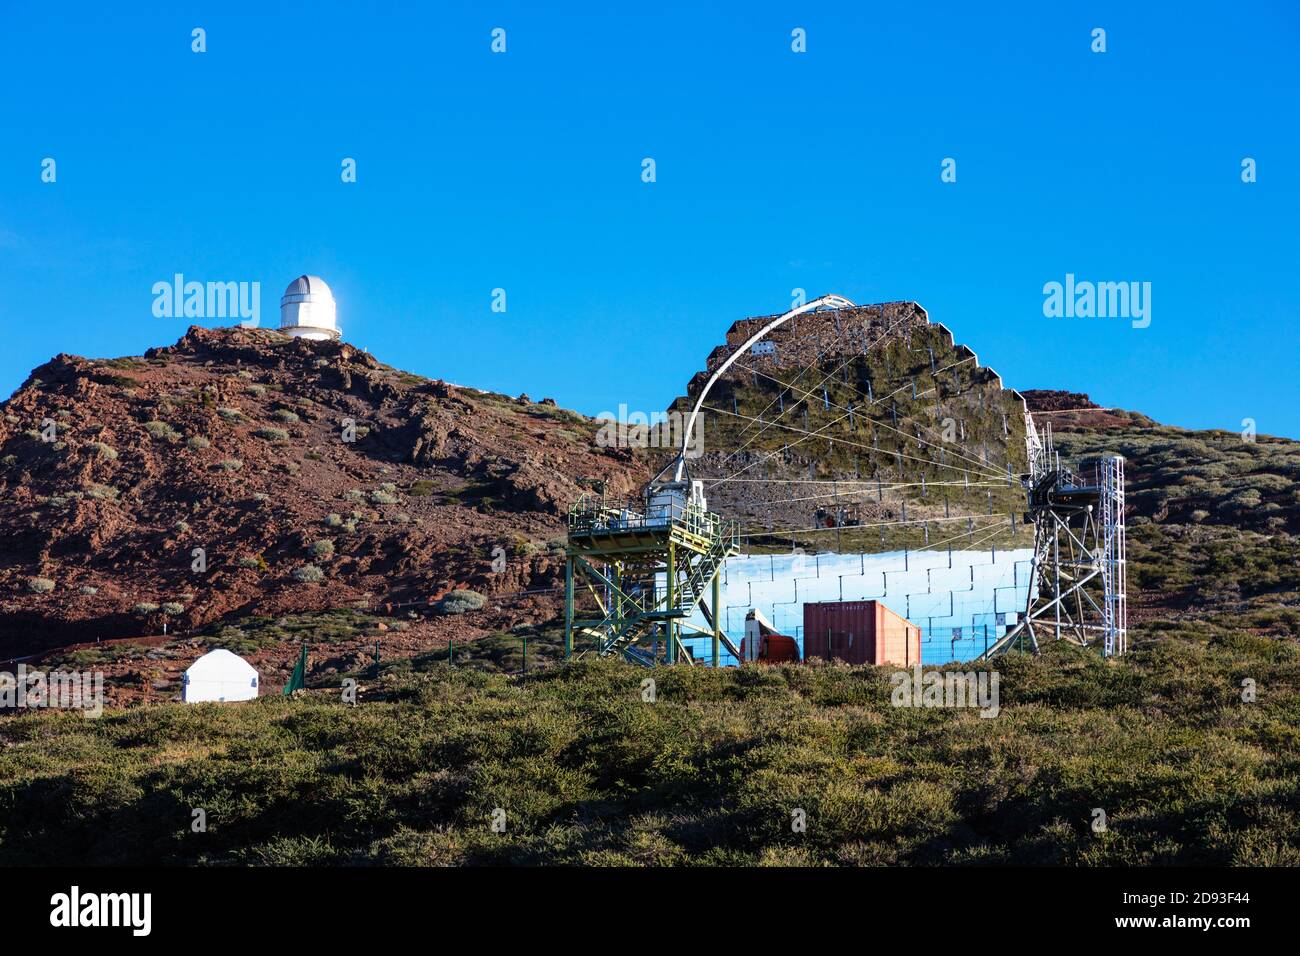 Europa, España, Islas Canarias, La Palma, sitio de la Biosfera por la Unesco, el Parque Nacional de la Caldera de Taburiente, observatorio del telescopio y espejos Foto de stock